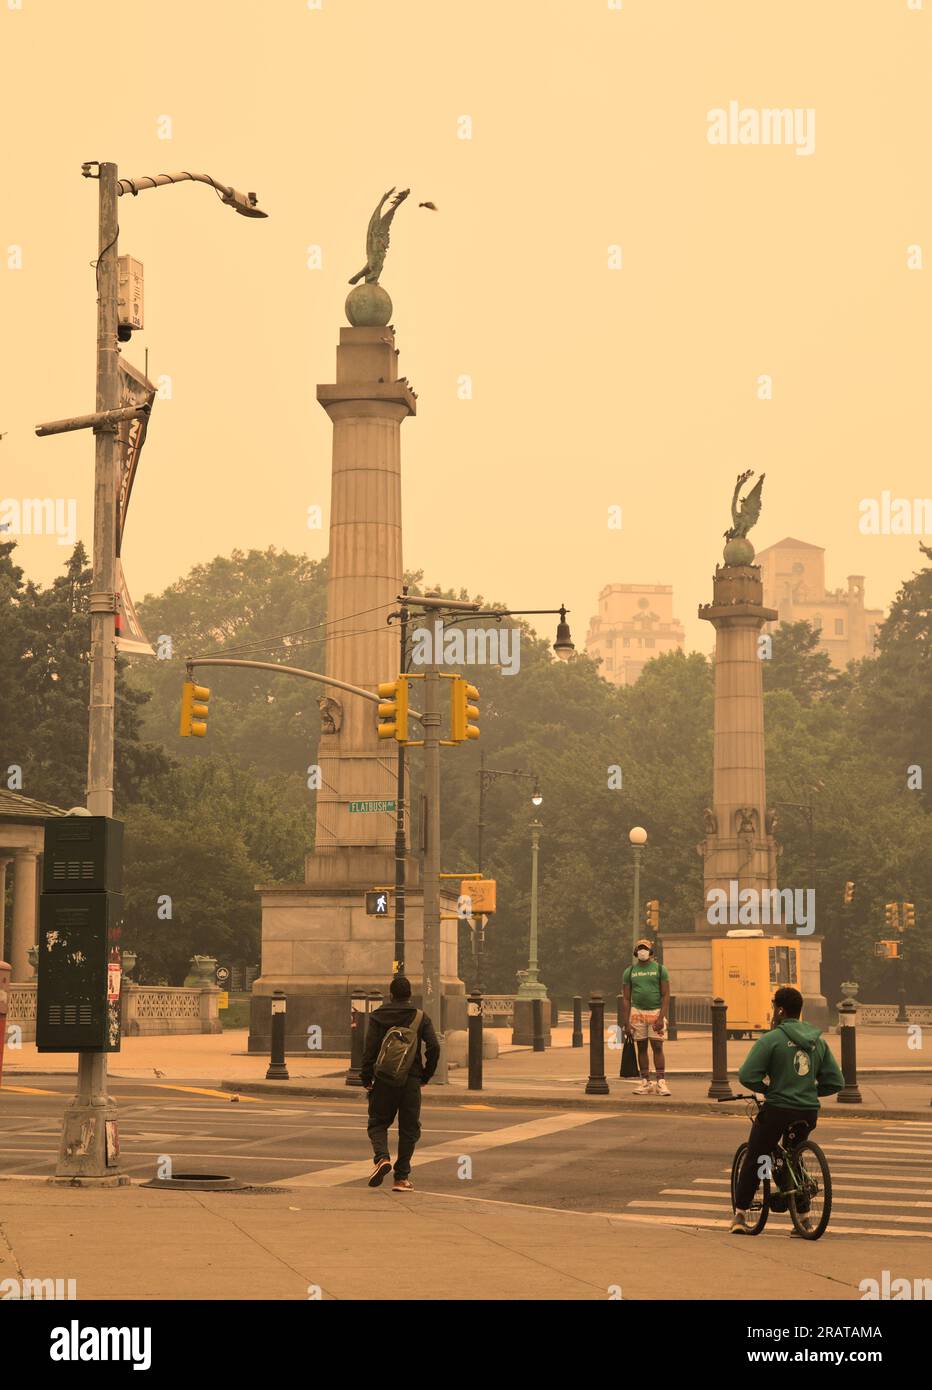 Brooklyn, NY - juin 7 2023 : les gens passent par Grand Army Plaza pendant les conditions de brume et de fumée causées par les feux de forêt au Canada. Beaucoup de gens portent m Banque D'Images